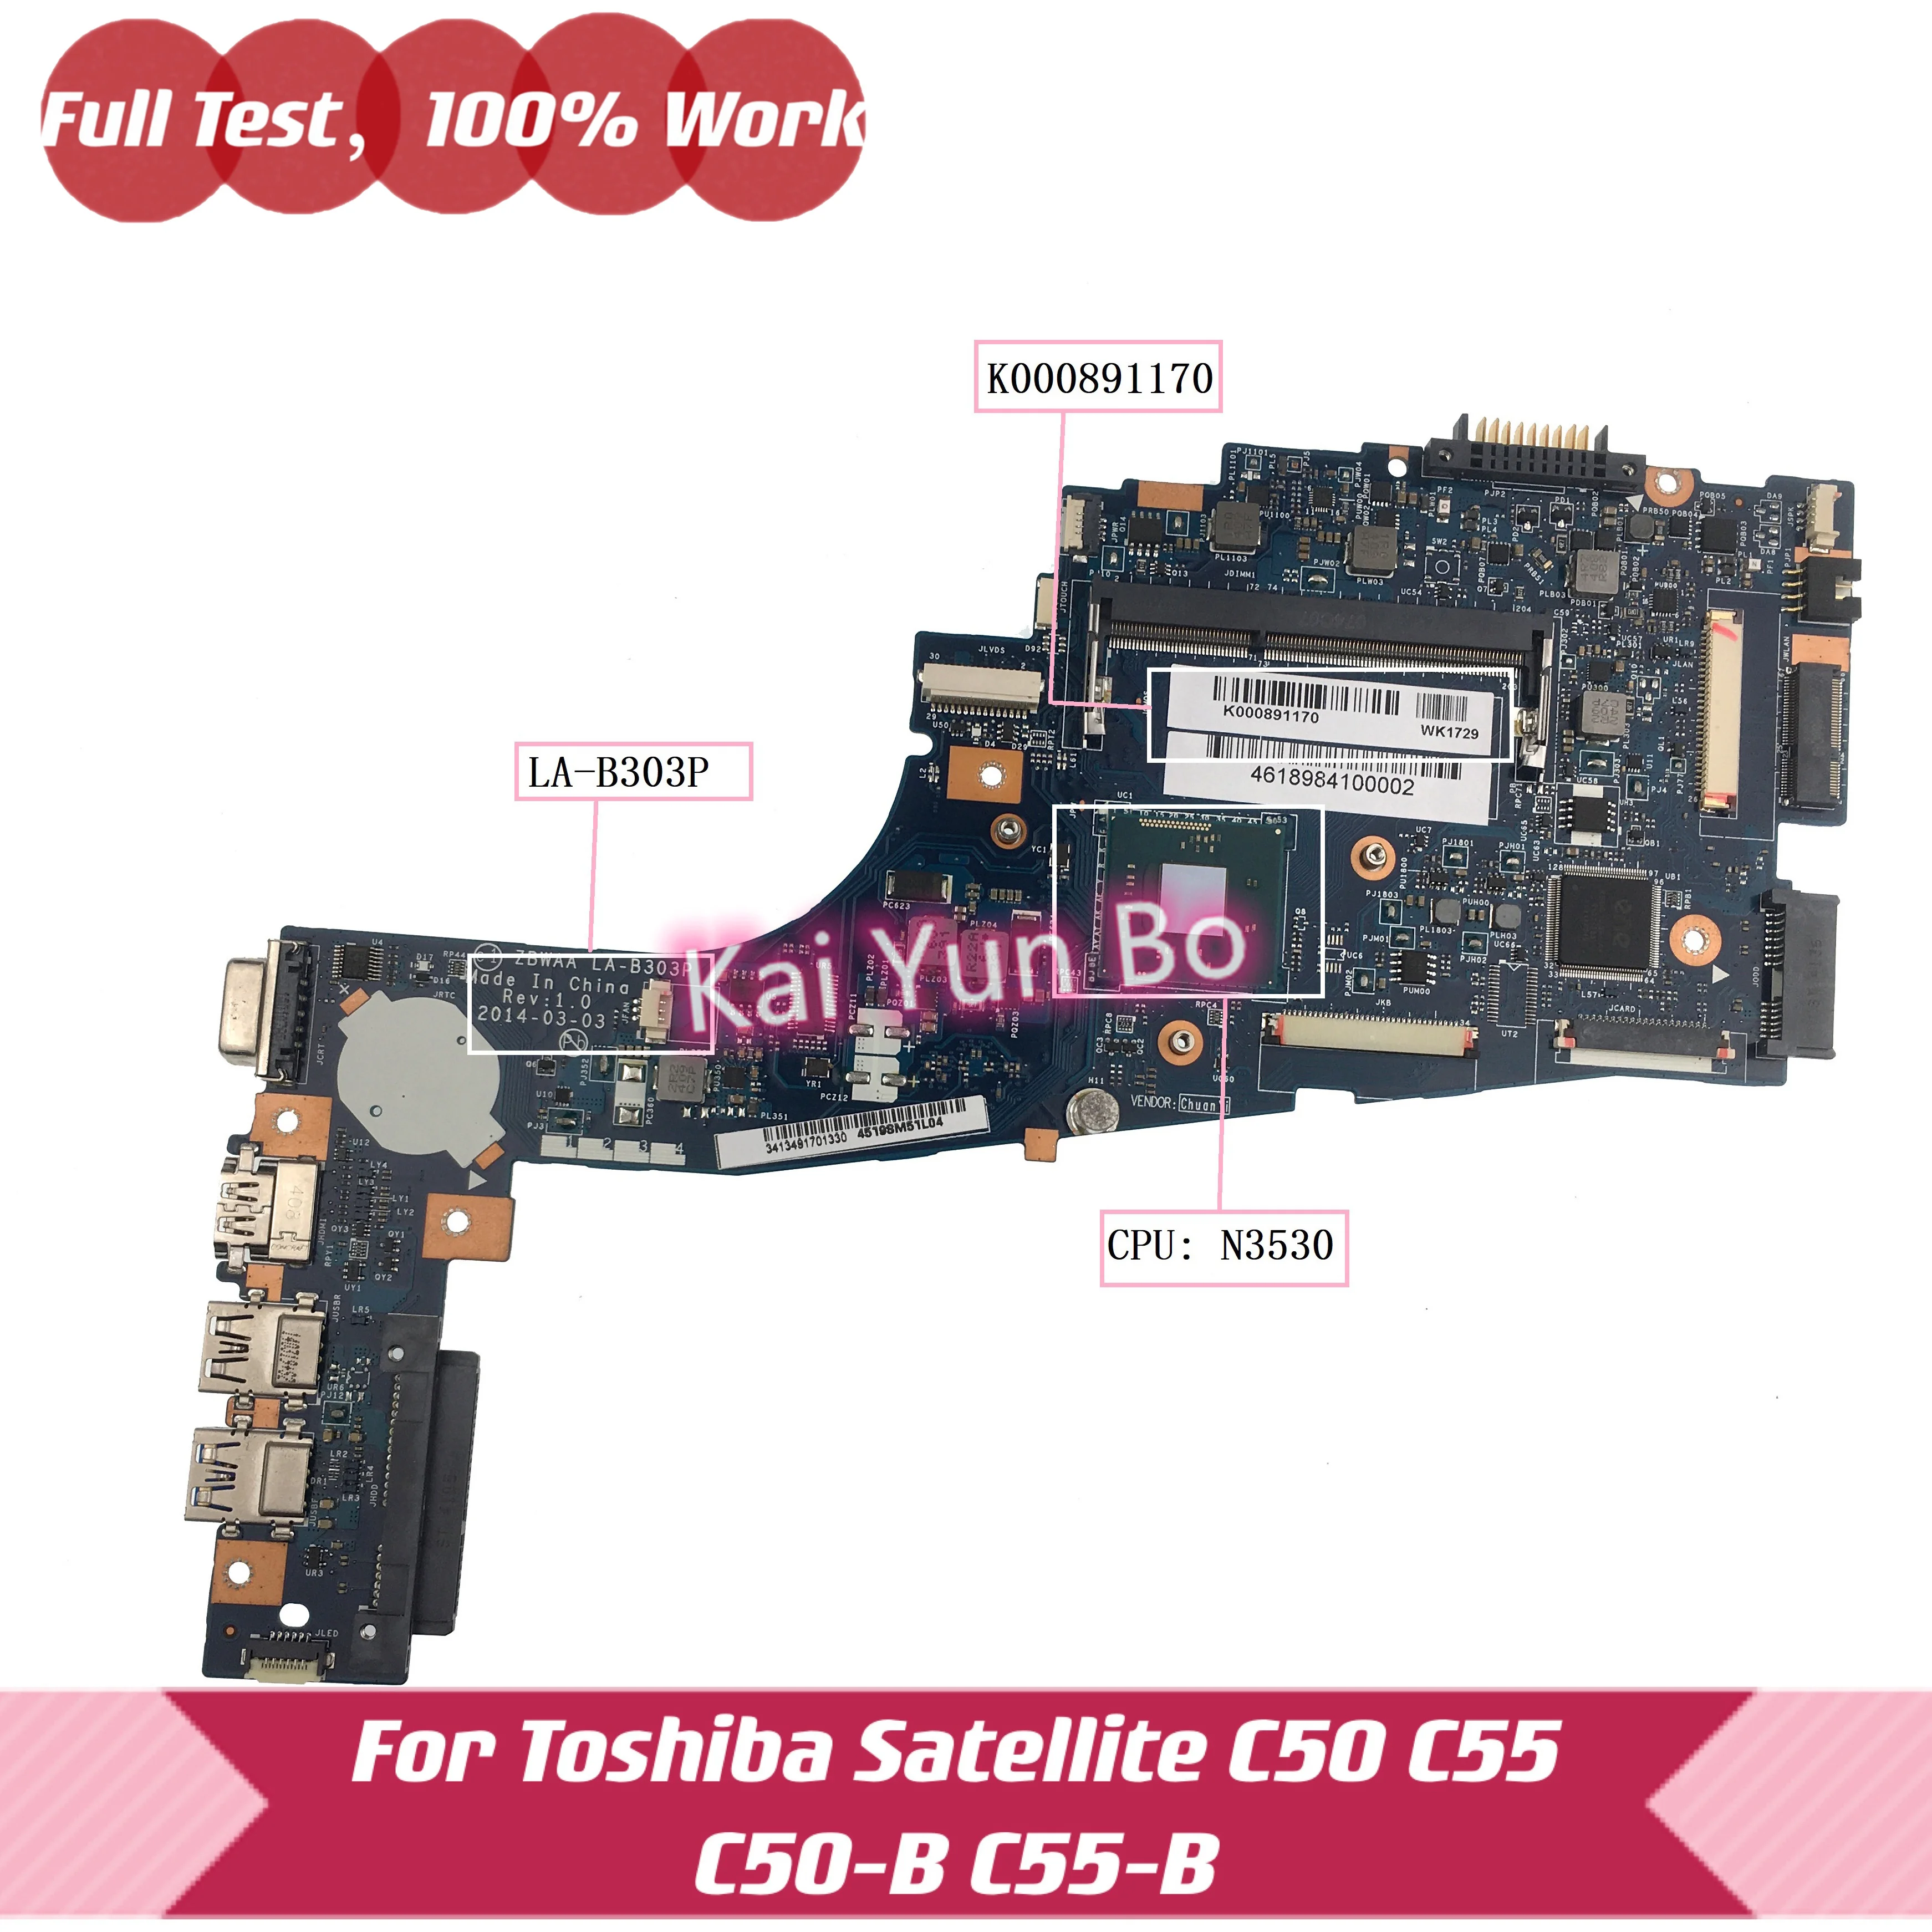 ZBWAA LA-B303P K000891170 Mainboard For Toshiba Satellite C50 C55-B C55 C50-B c55t-b5110 Laptop Motherboard with N3530 CPU DDR3